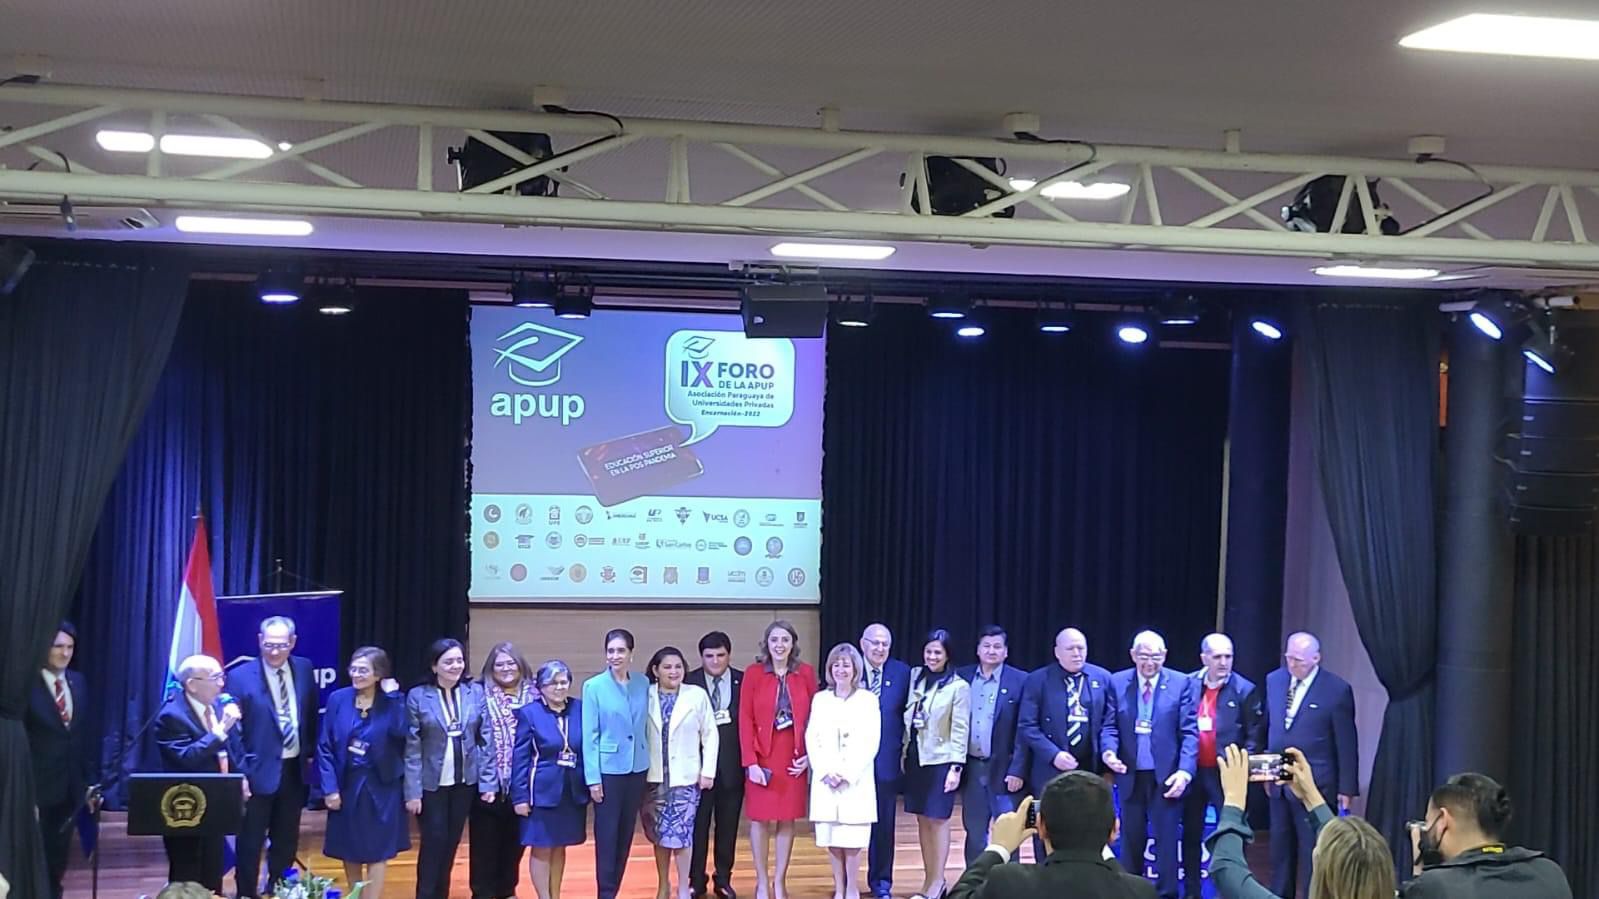 La UPE presente en el  IX Foro de la Asociación Paraguaya de Universidades Privadas, APUP